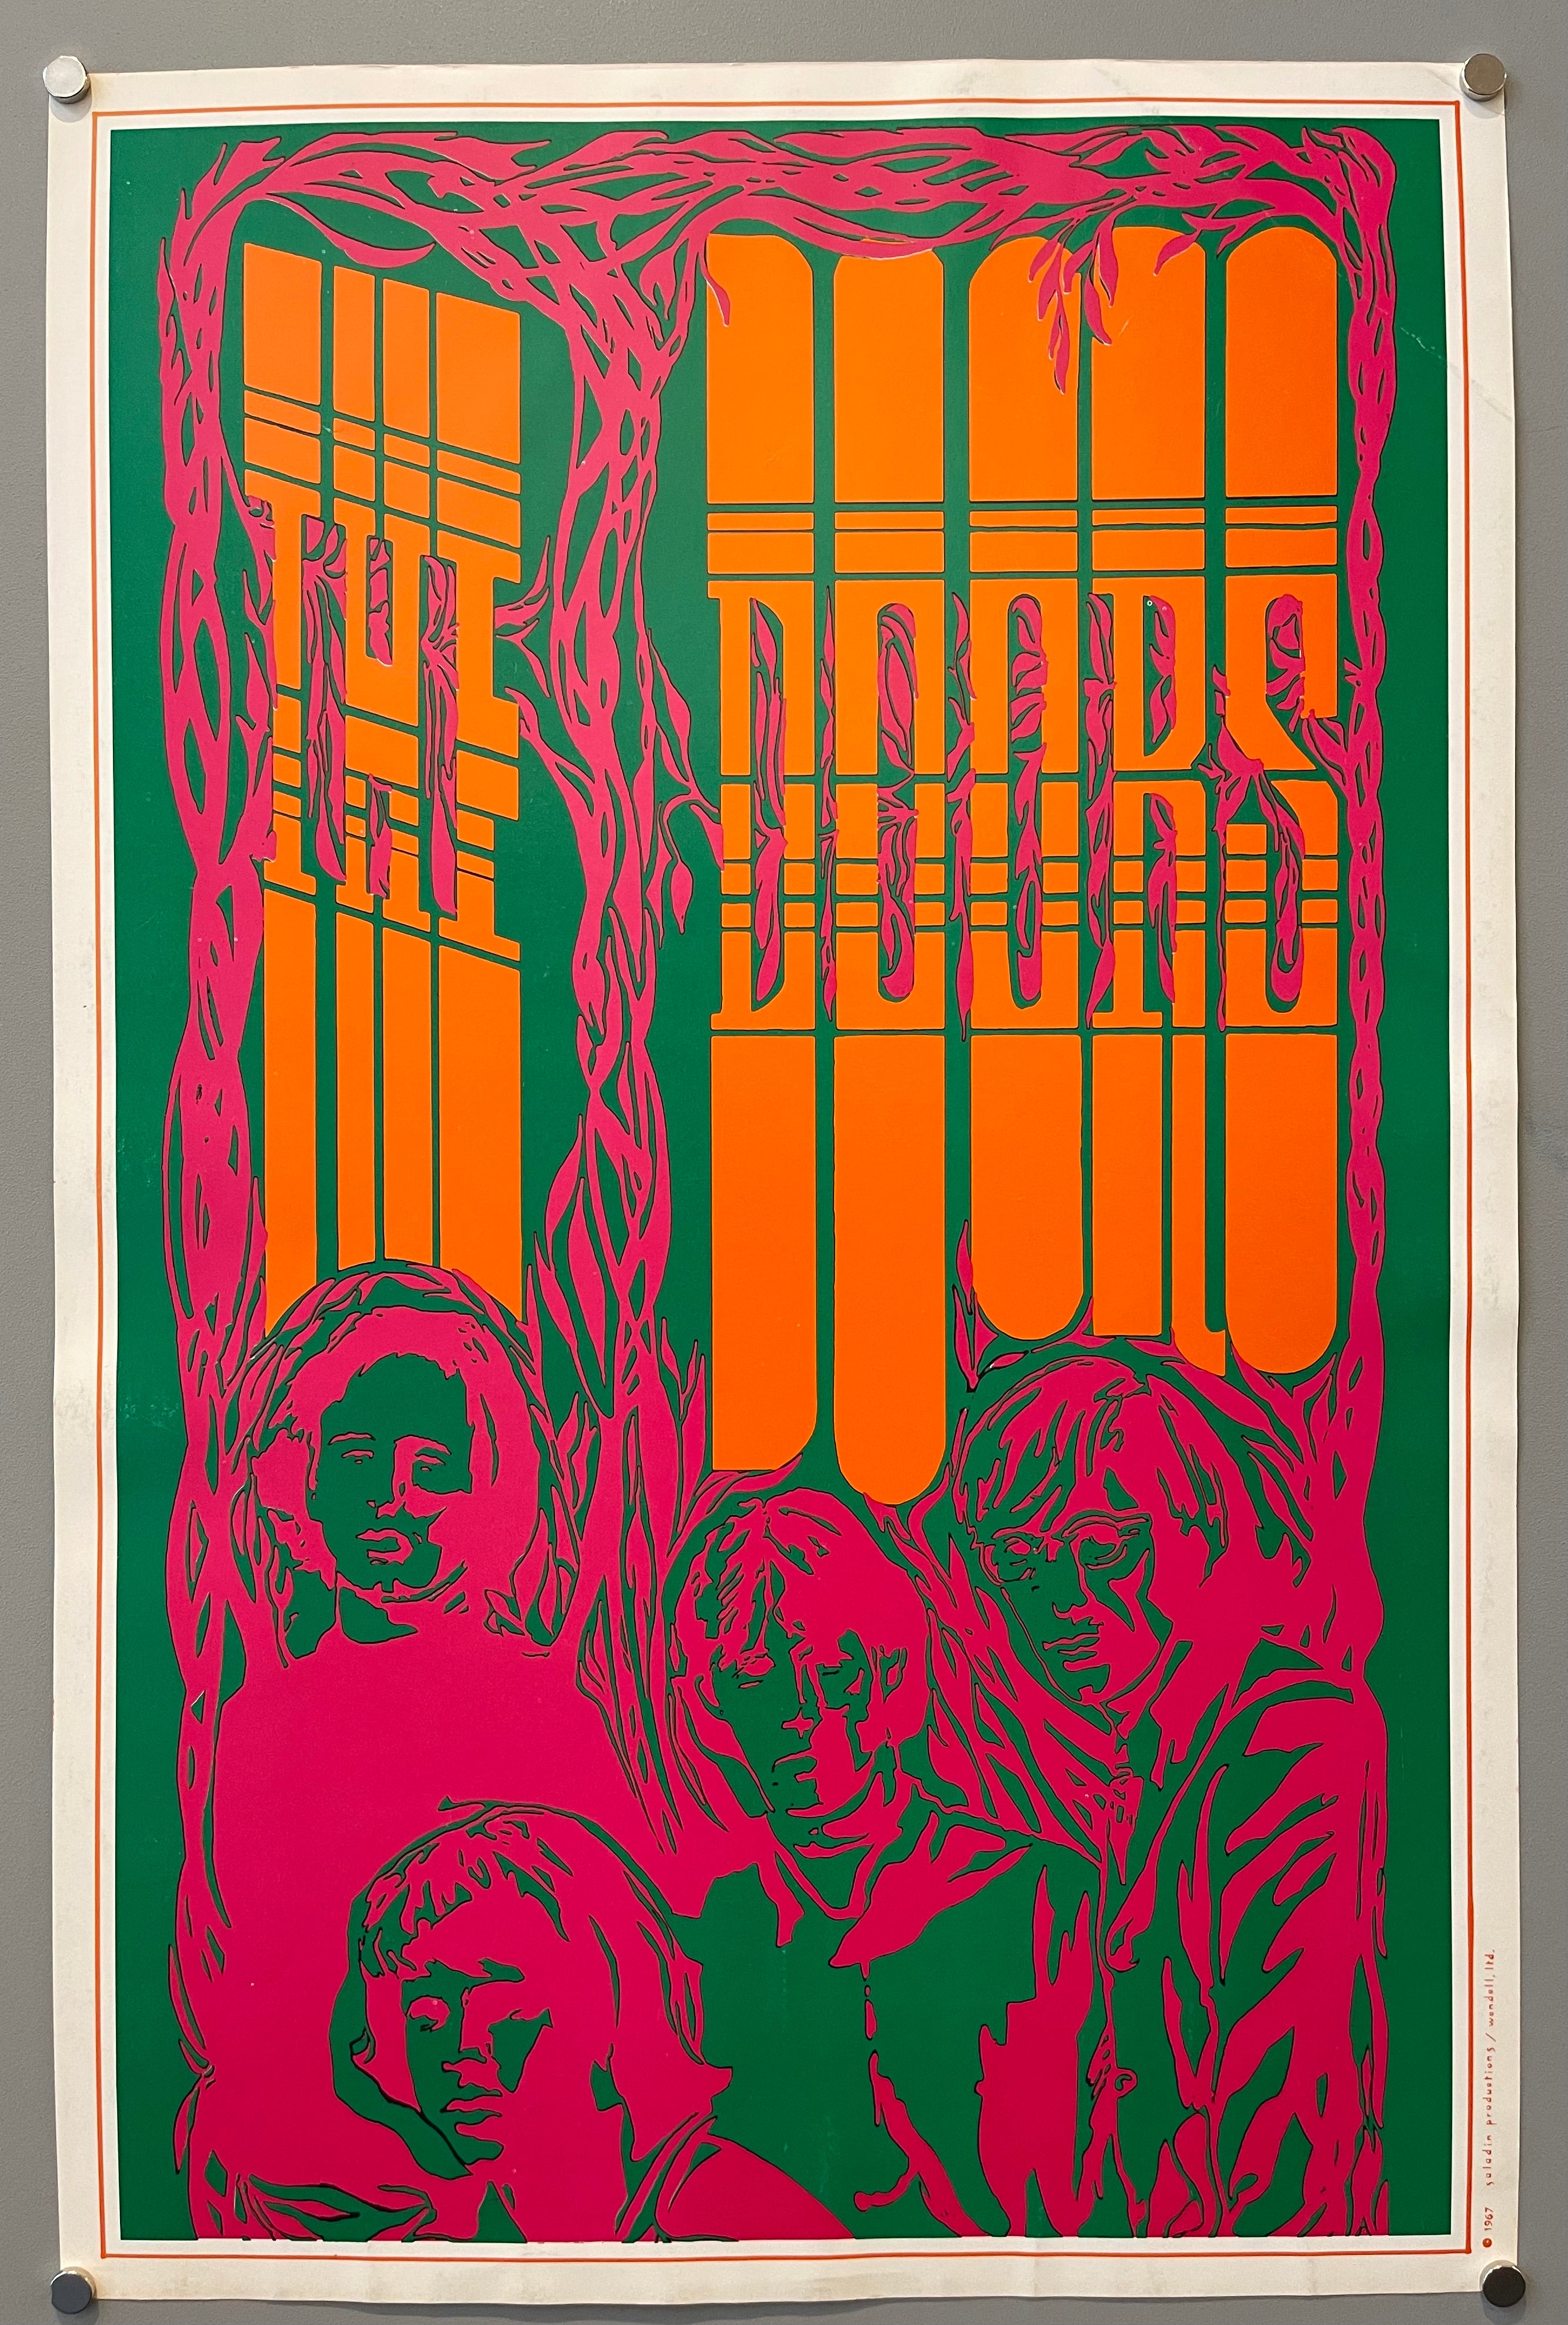 The Doors - The Doors (1967) (Full Album) 